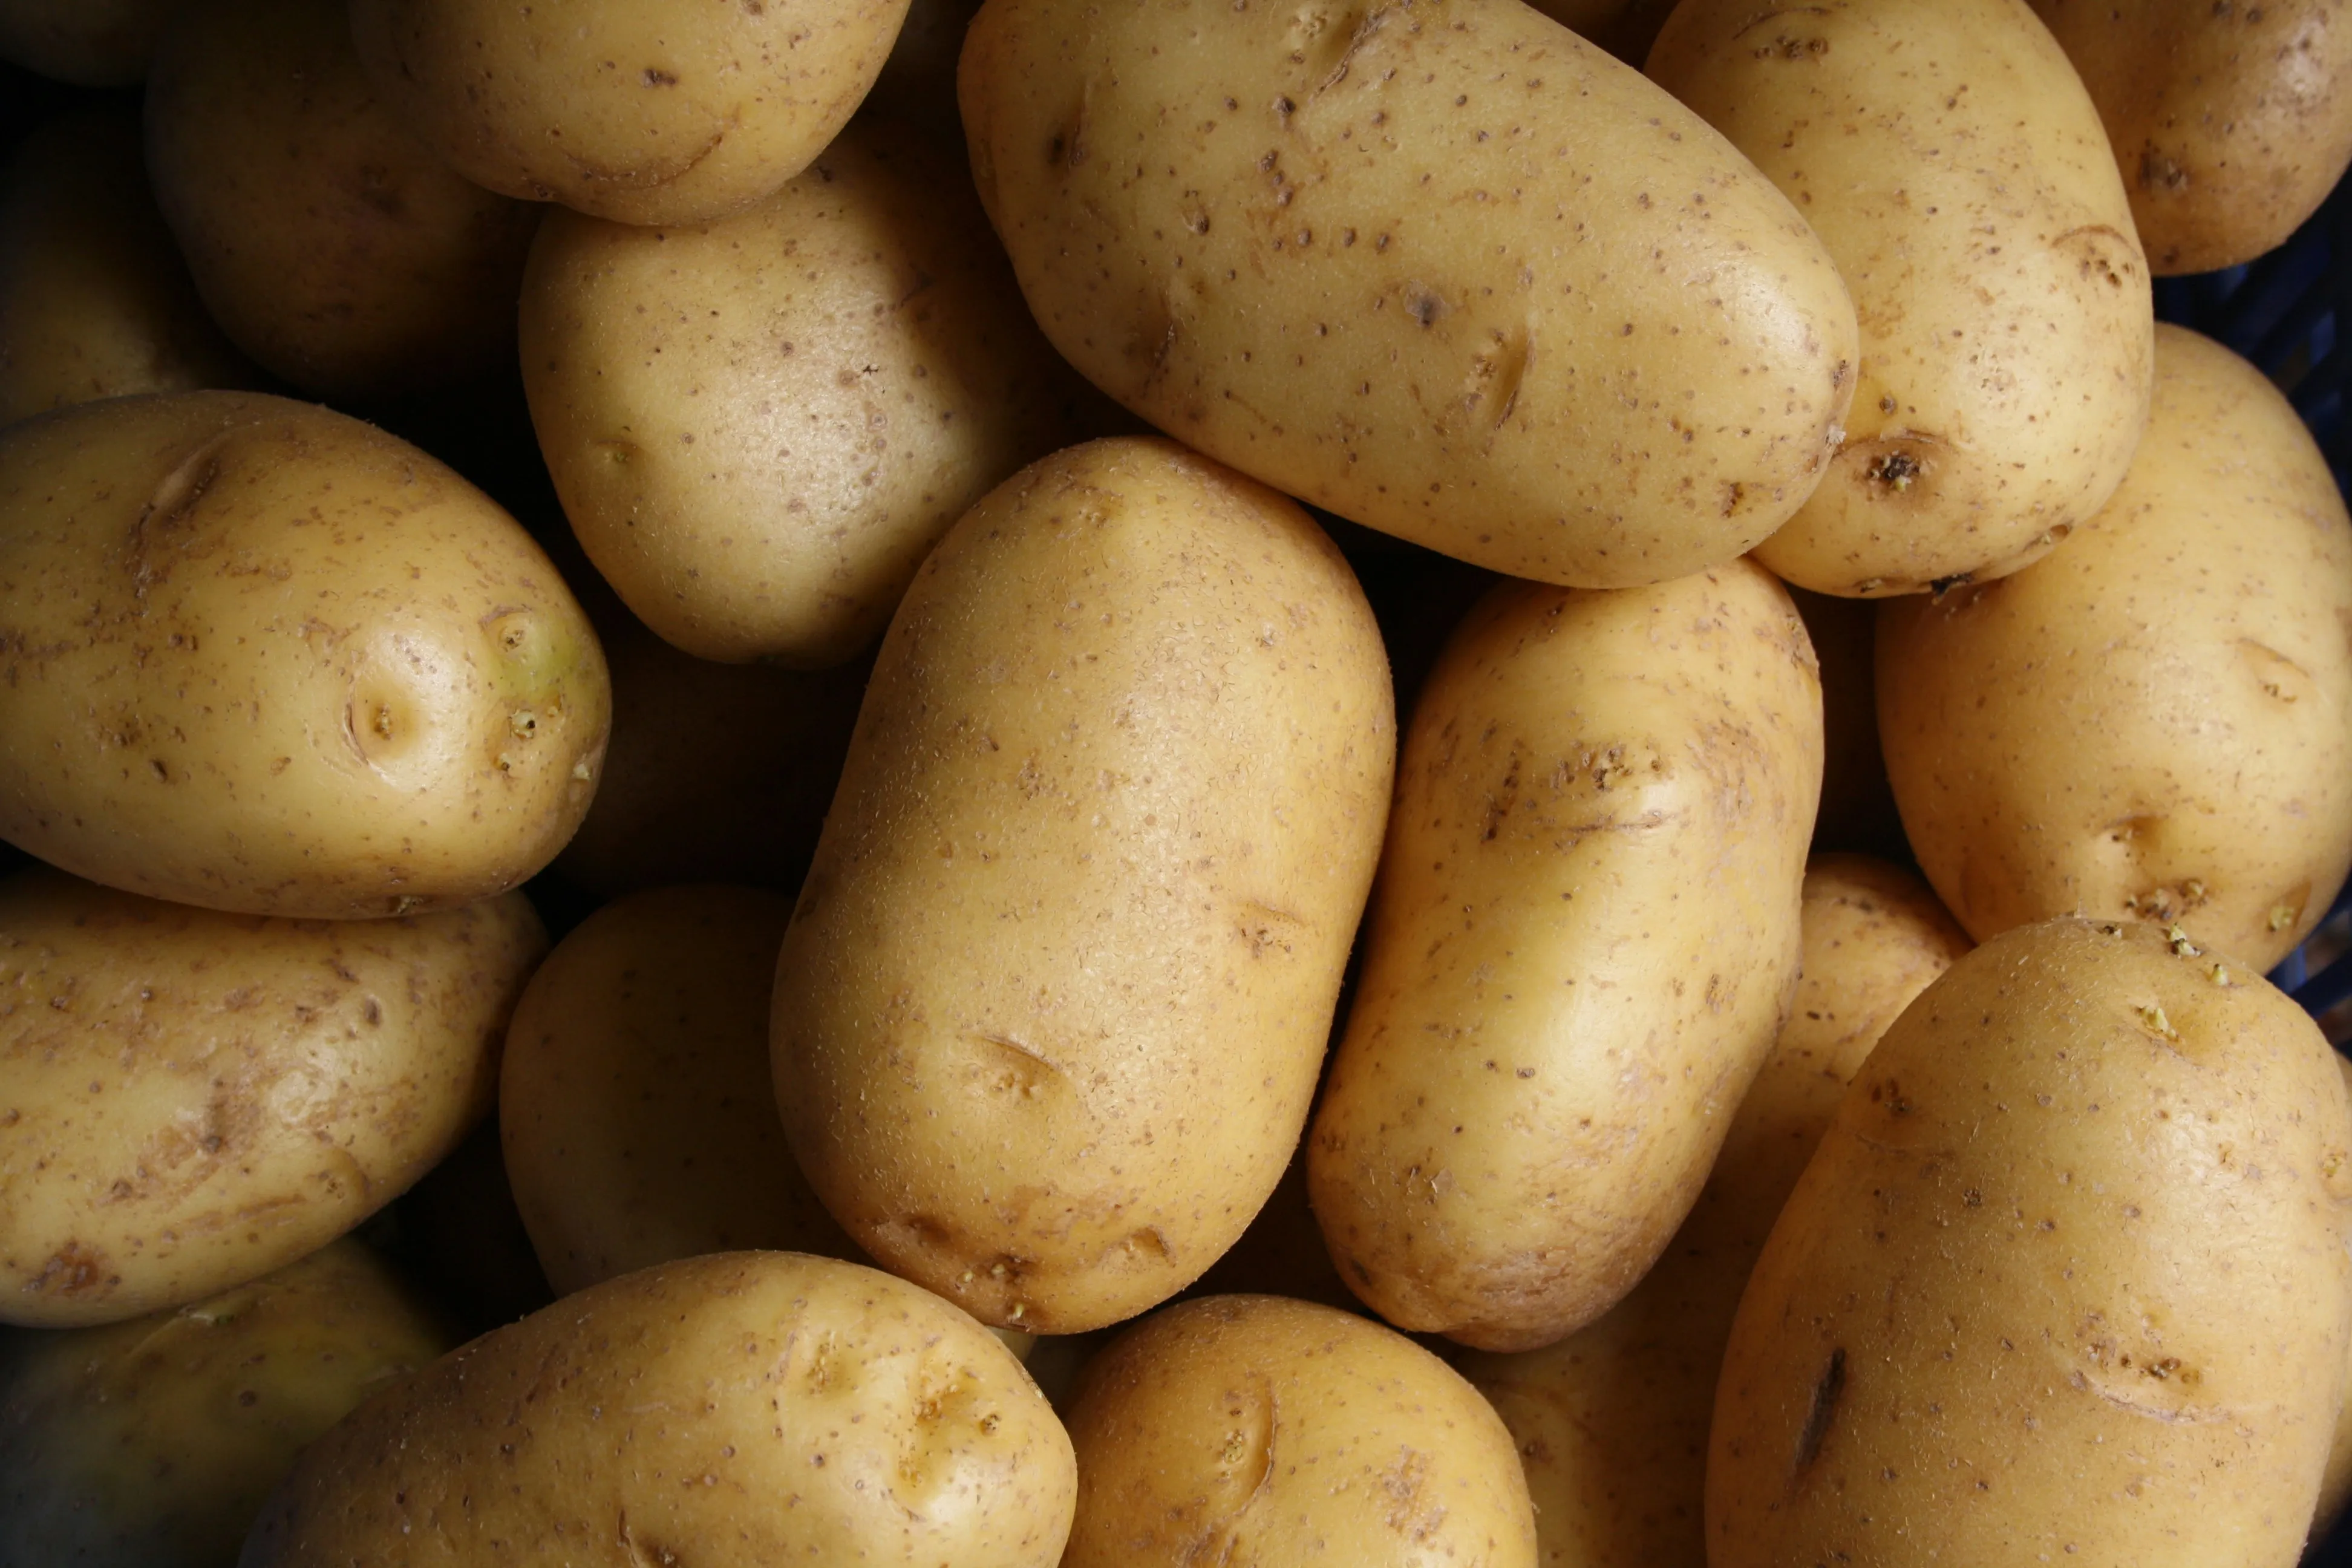 Как правильно хранить картофель